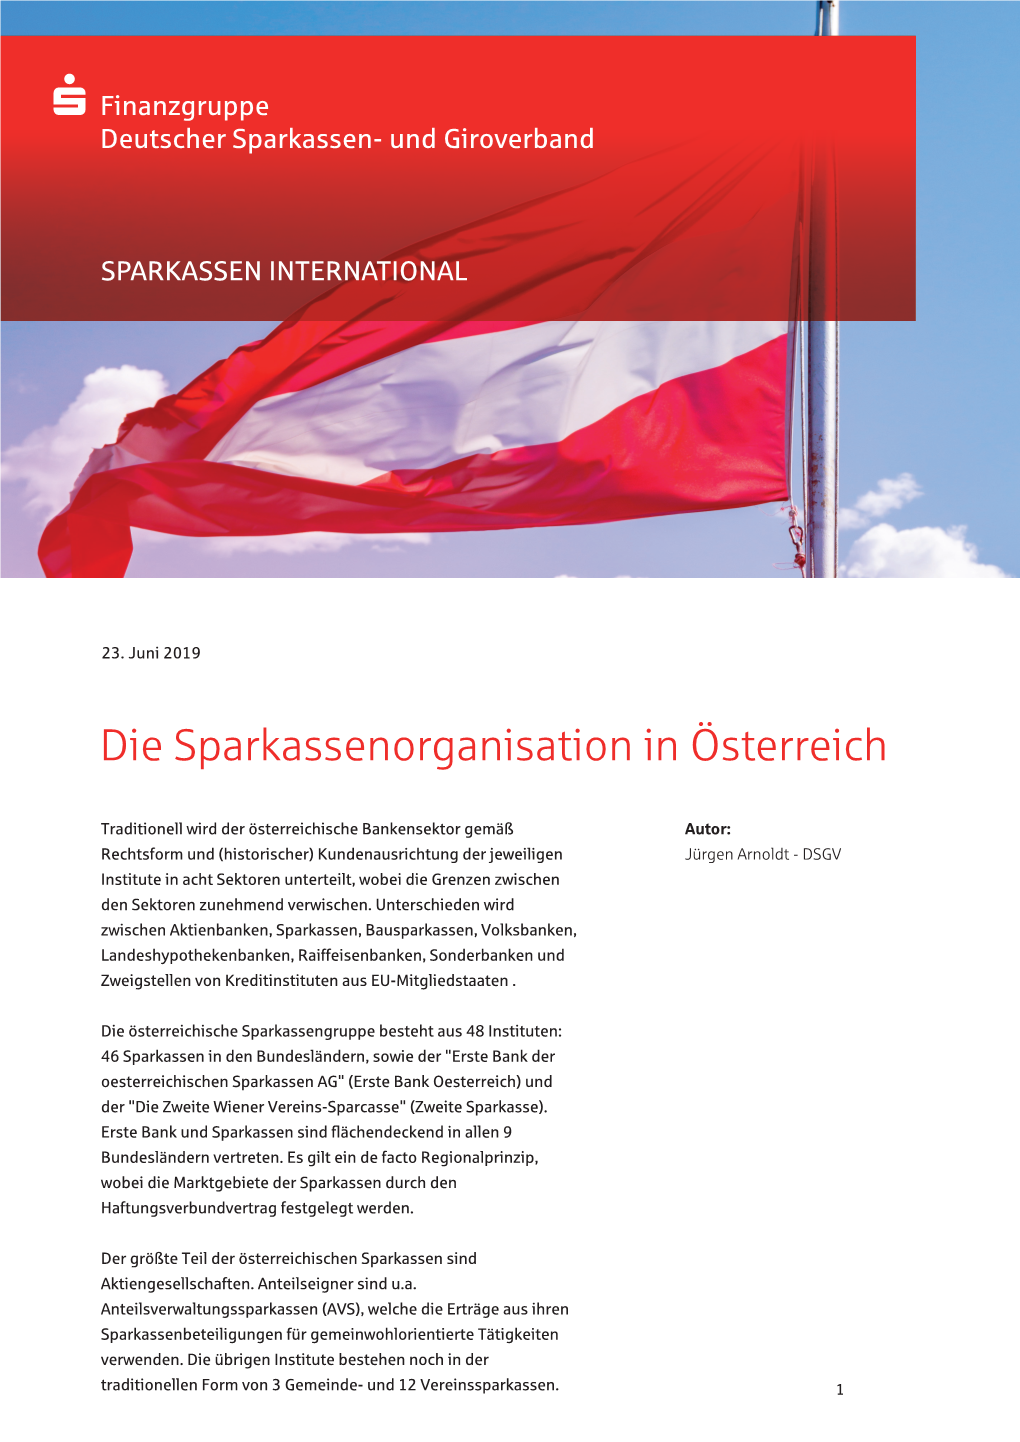 Die Sparkassenorganisation in Österreich